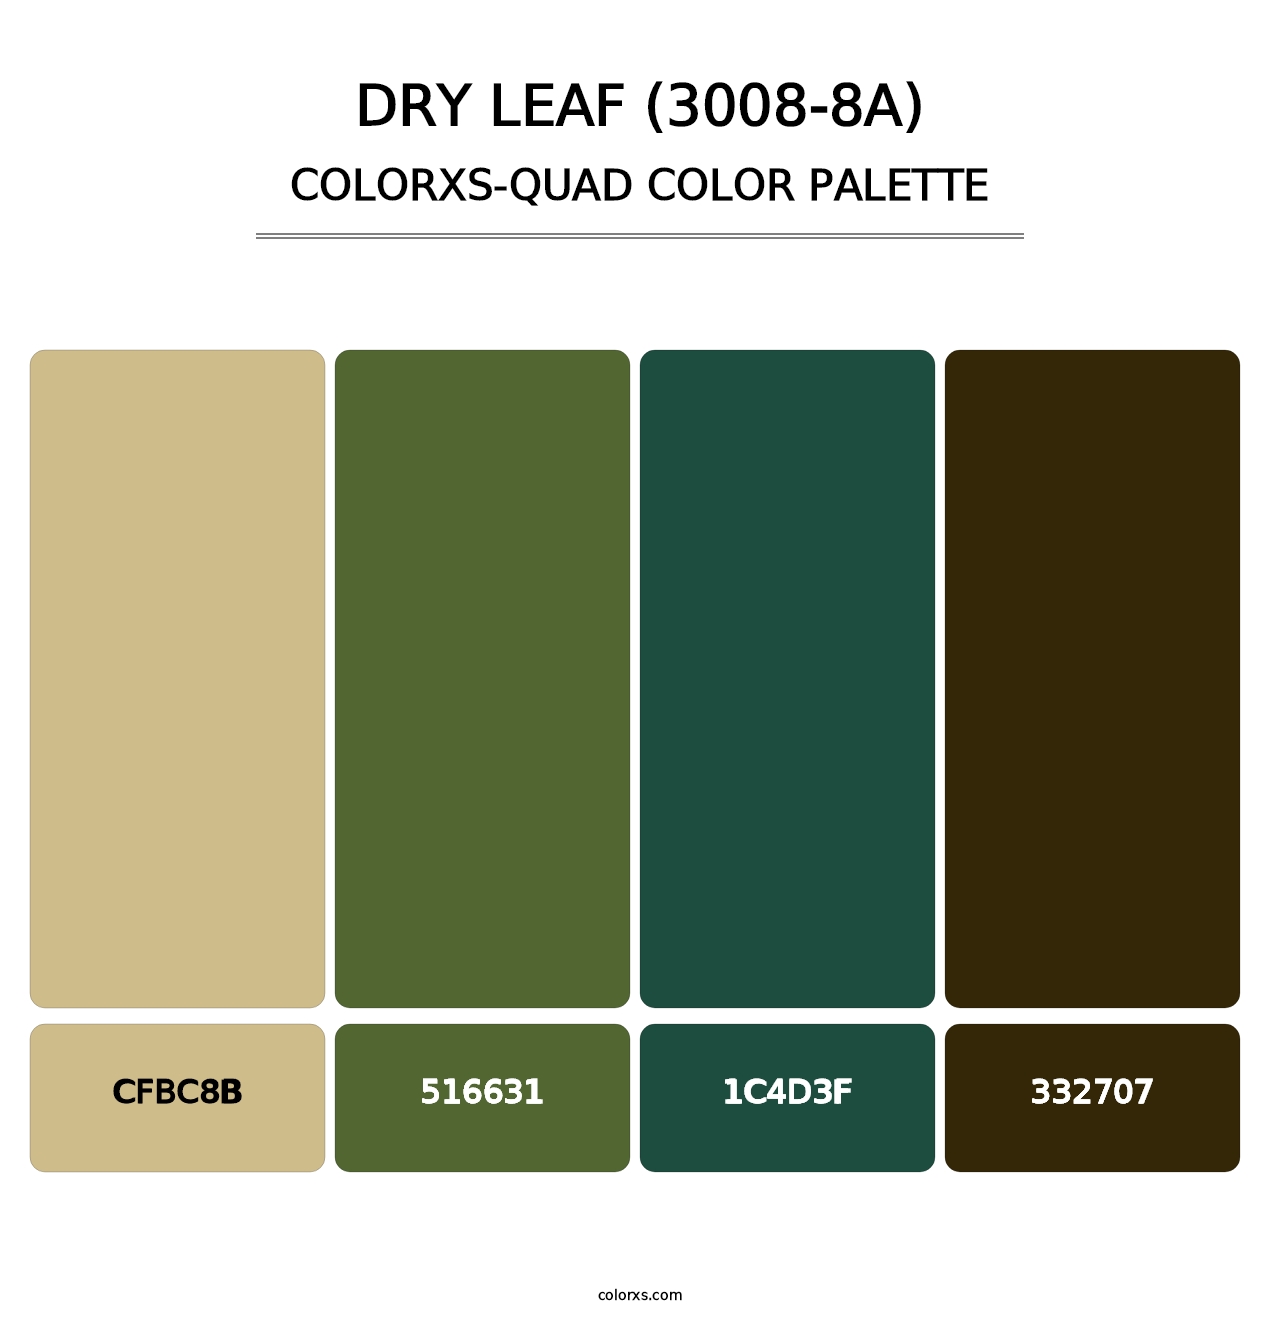 Dry Leaf (3008-8A) - Colorxs Quad Palette